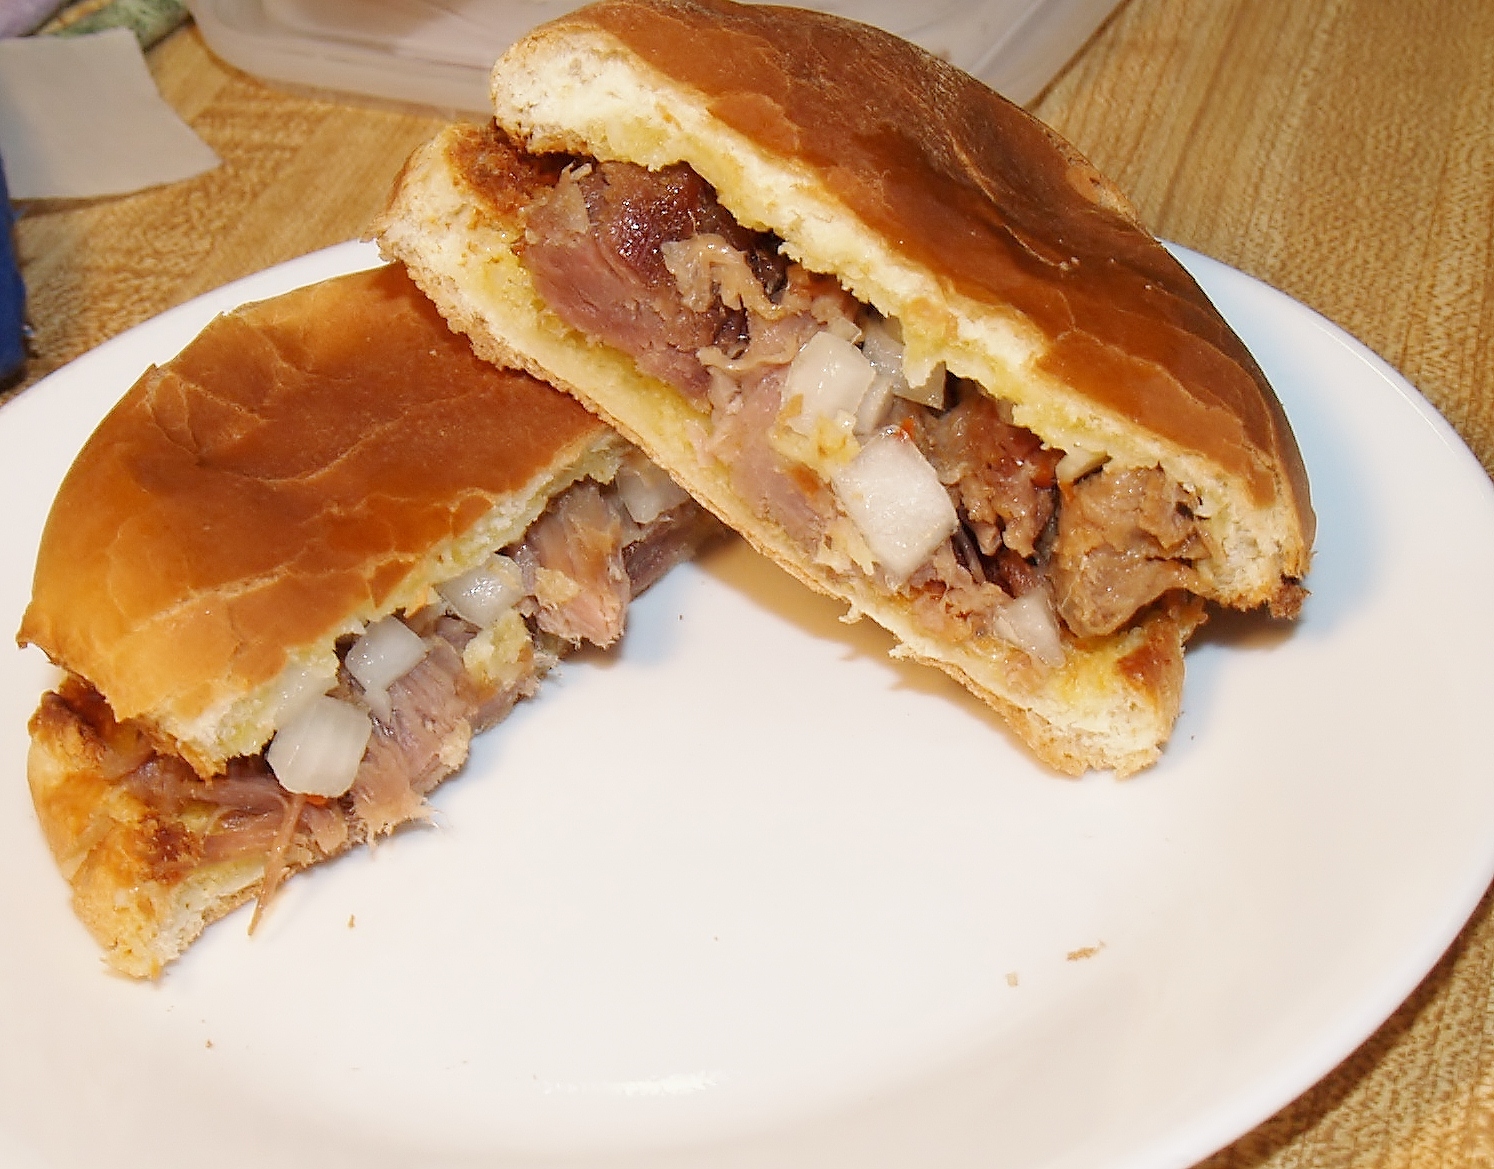  Pulled Pork Sandwich / Kelli's Kitchen